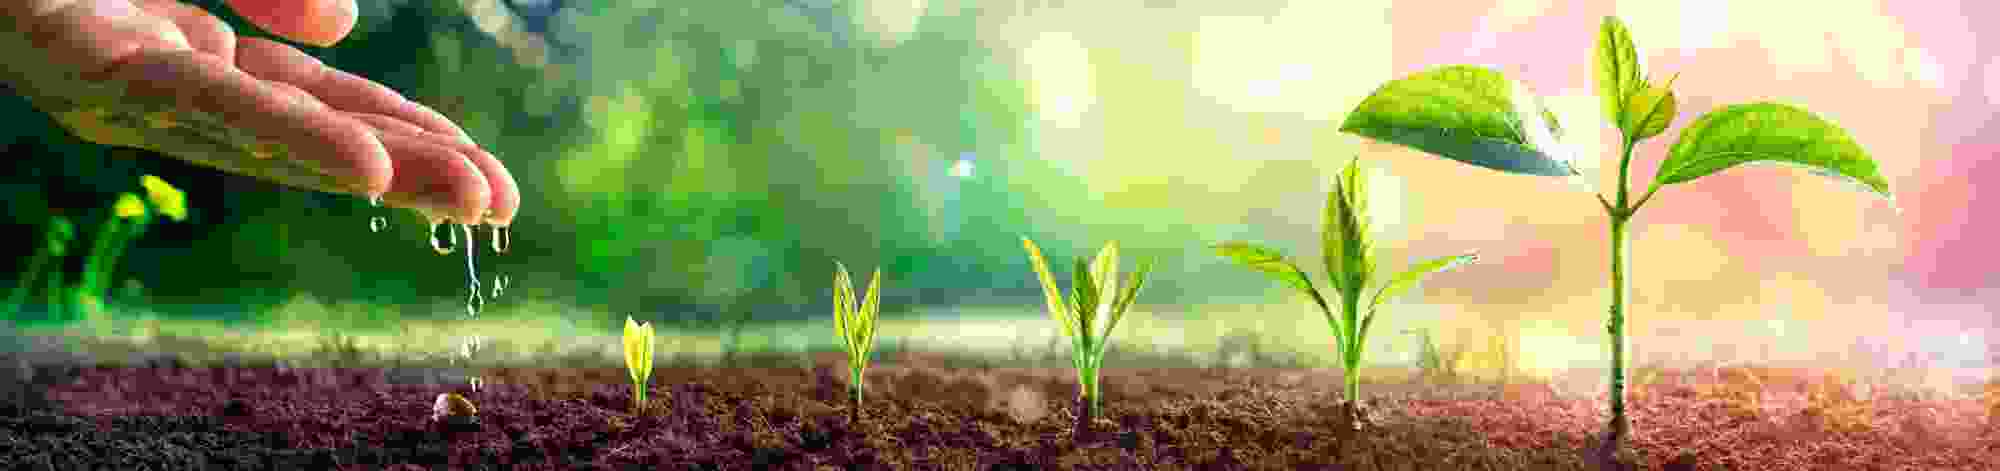 Plants in soil header.jpg